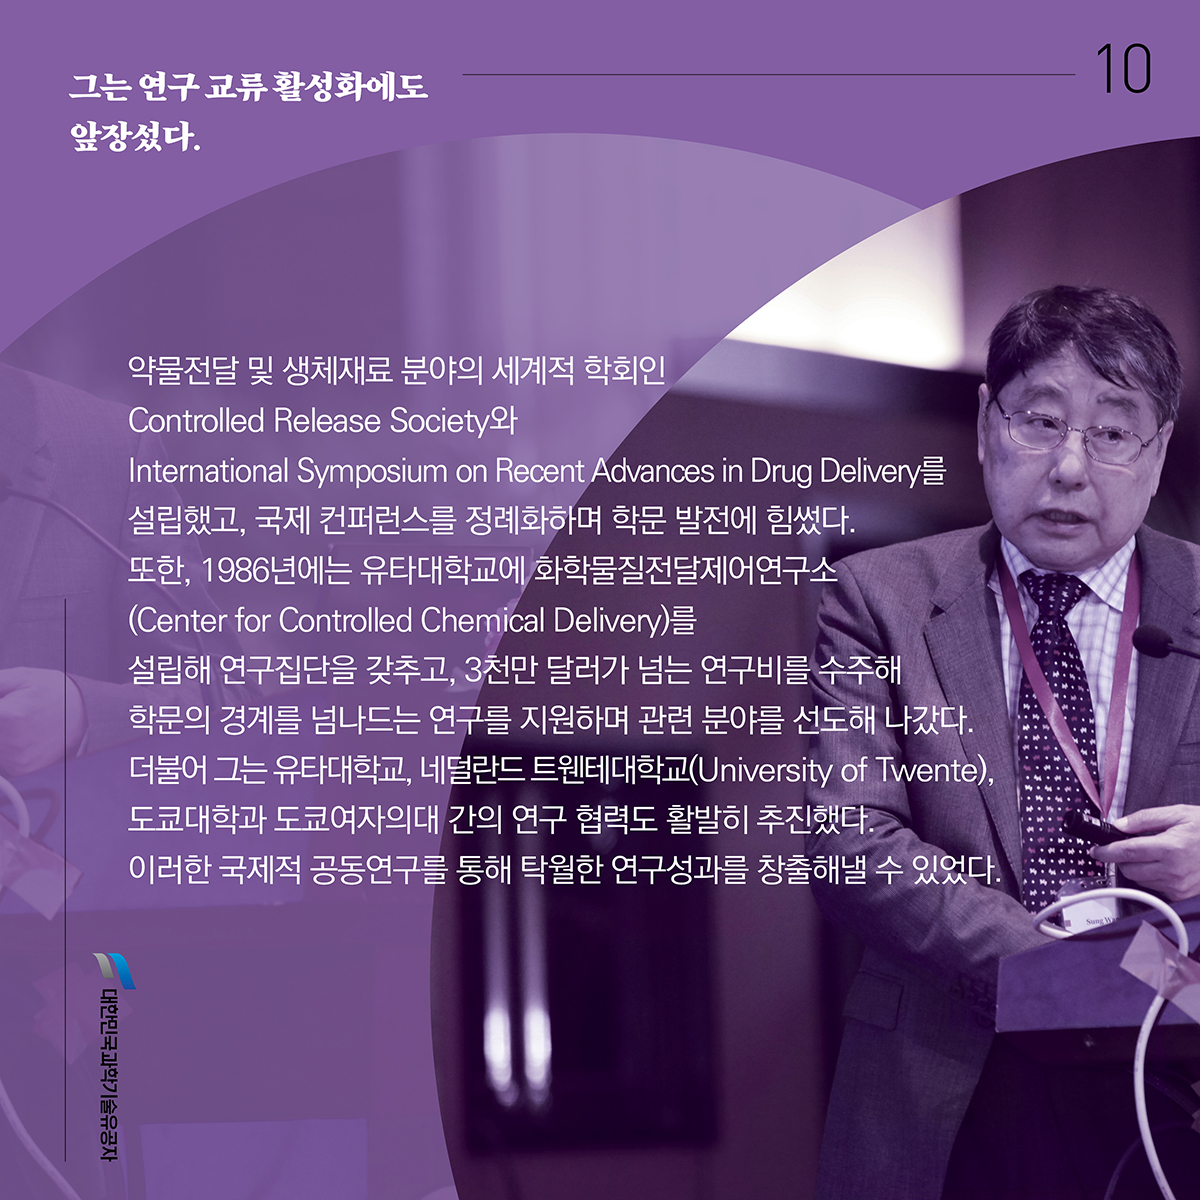 김성완_카드뉴스10.jpg 이미지입니다.